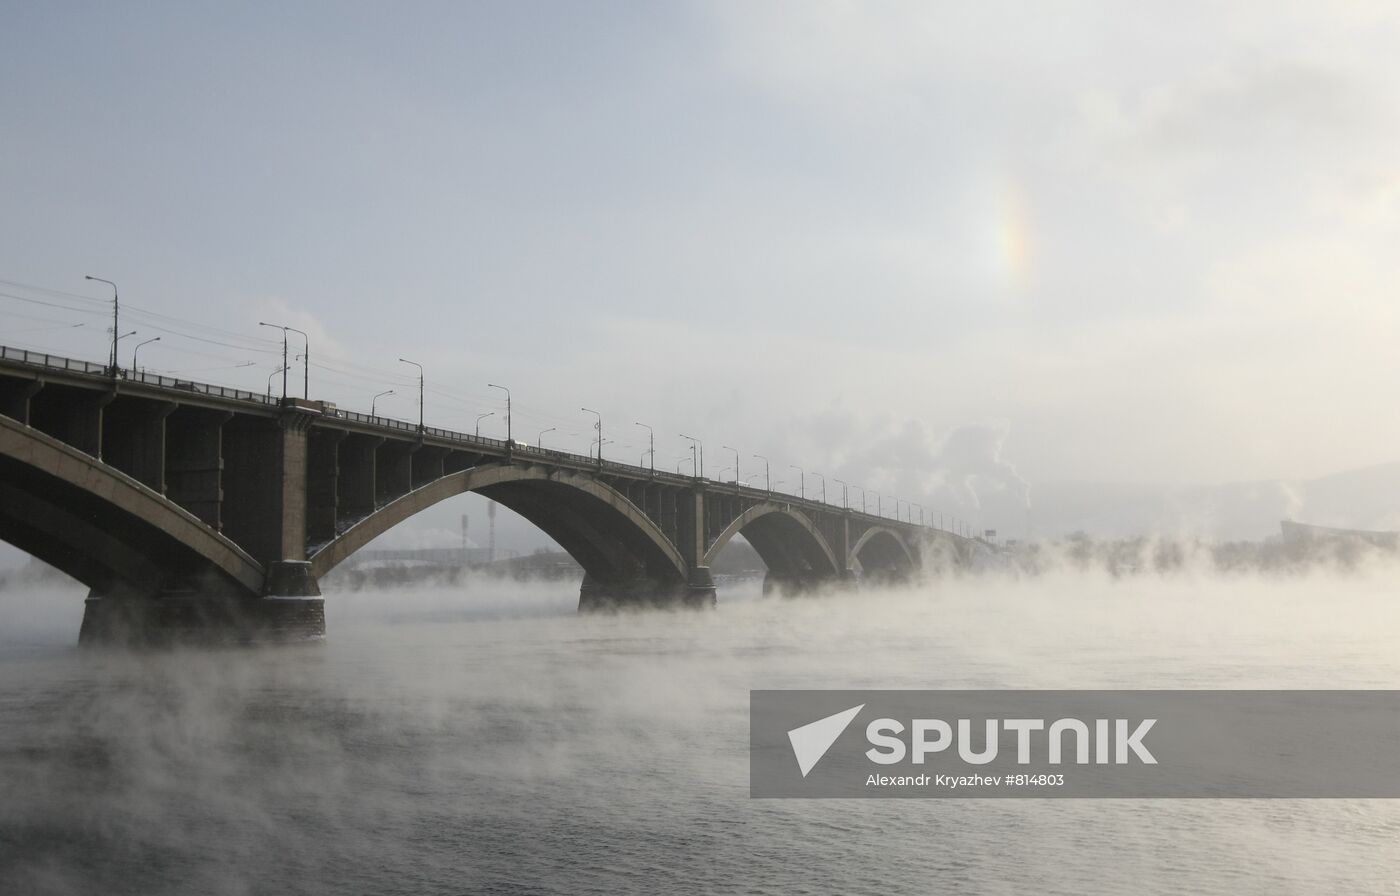 Freezing weather hits Krasnoyarsk